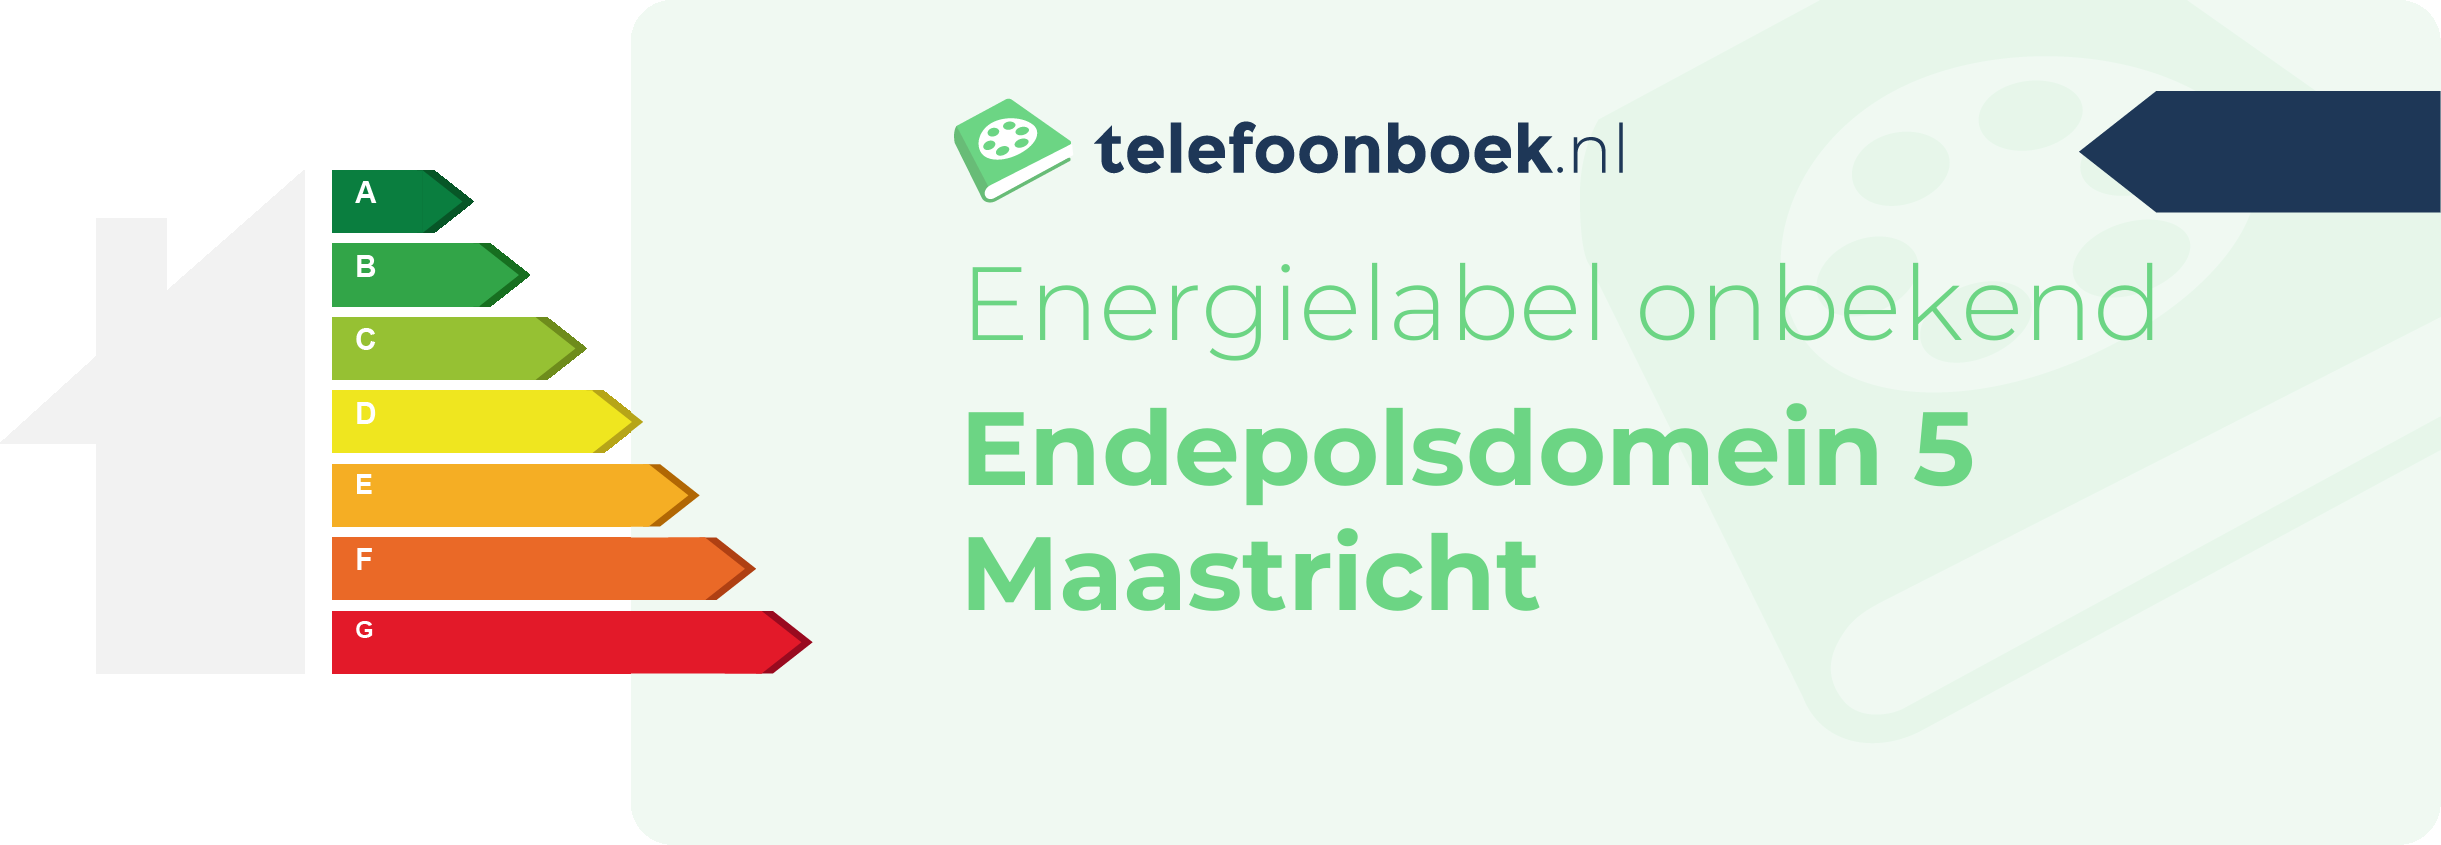 Energielabel Endepolsdomein 5 Maastricht